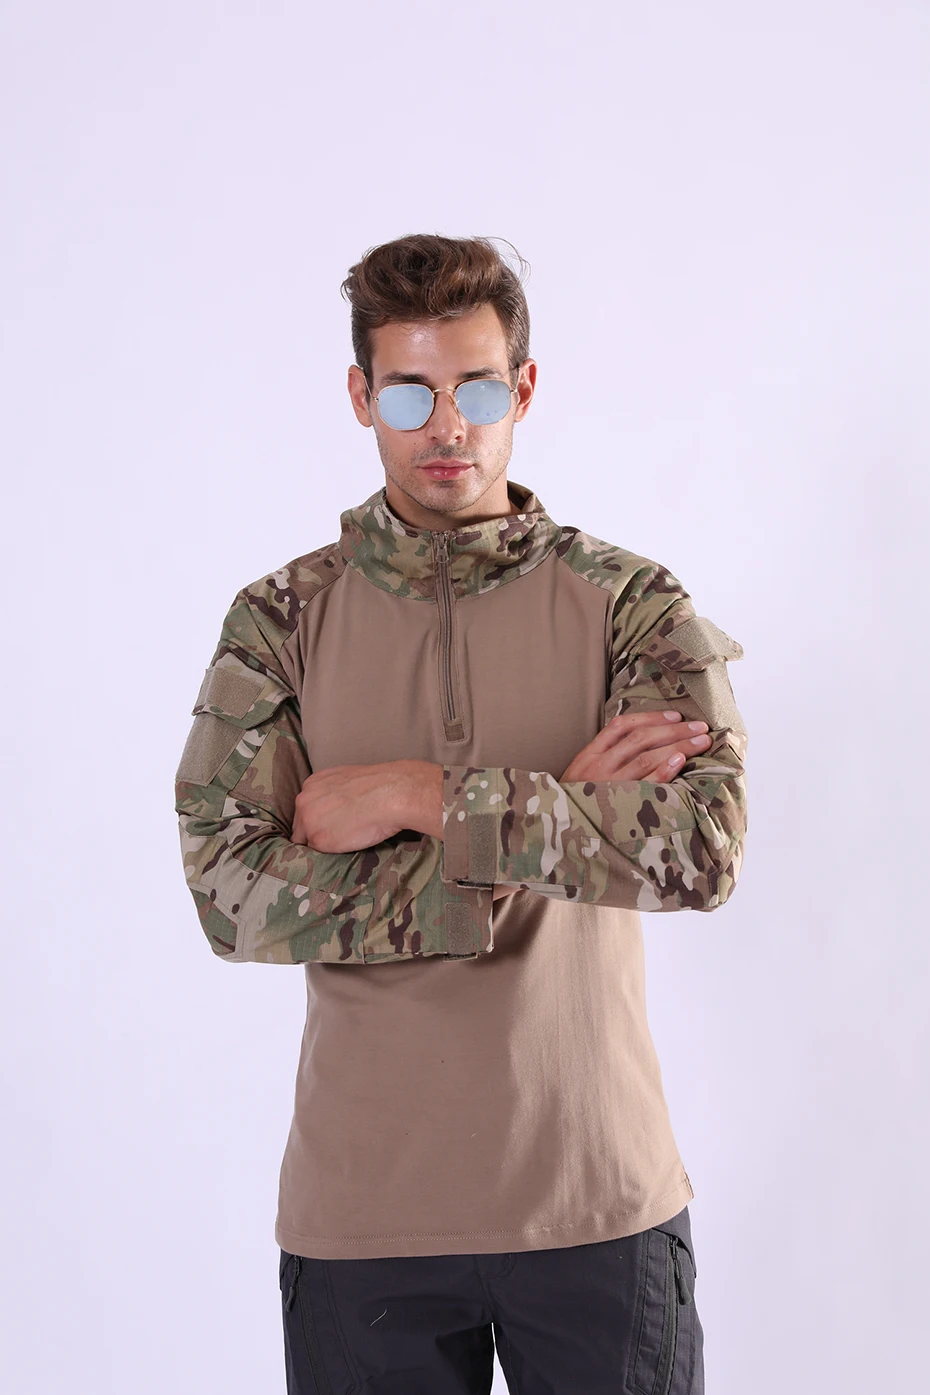 Армейская камуфляжная футболка мужская с длинным рукавом камуфляжная футболка быстросохнущая дышащая Пешие прогулки для охоты военный тактический футболка женская летняя